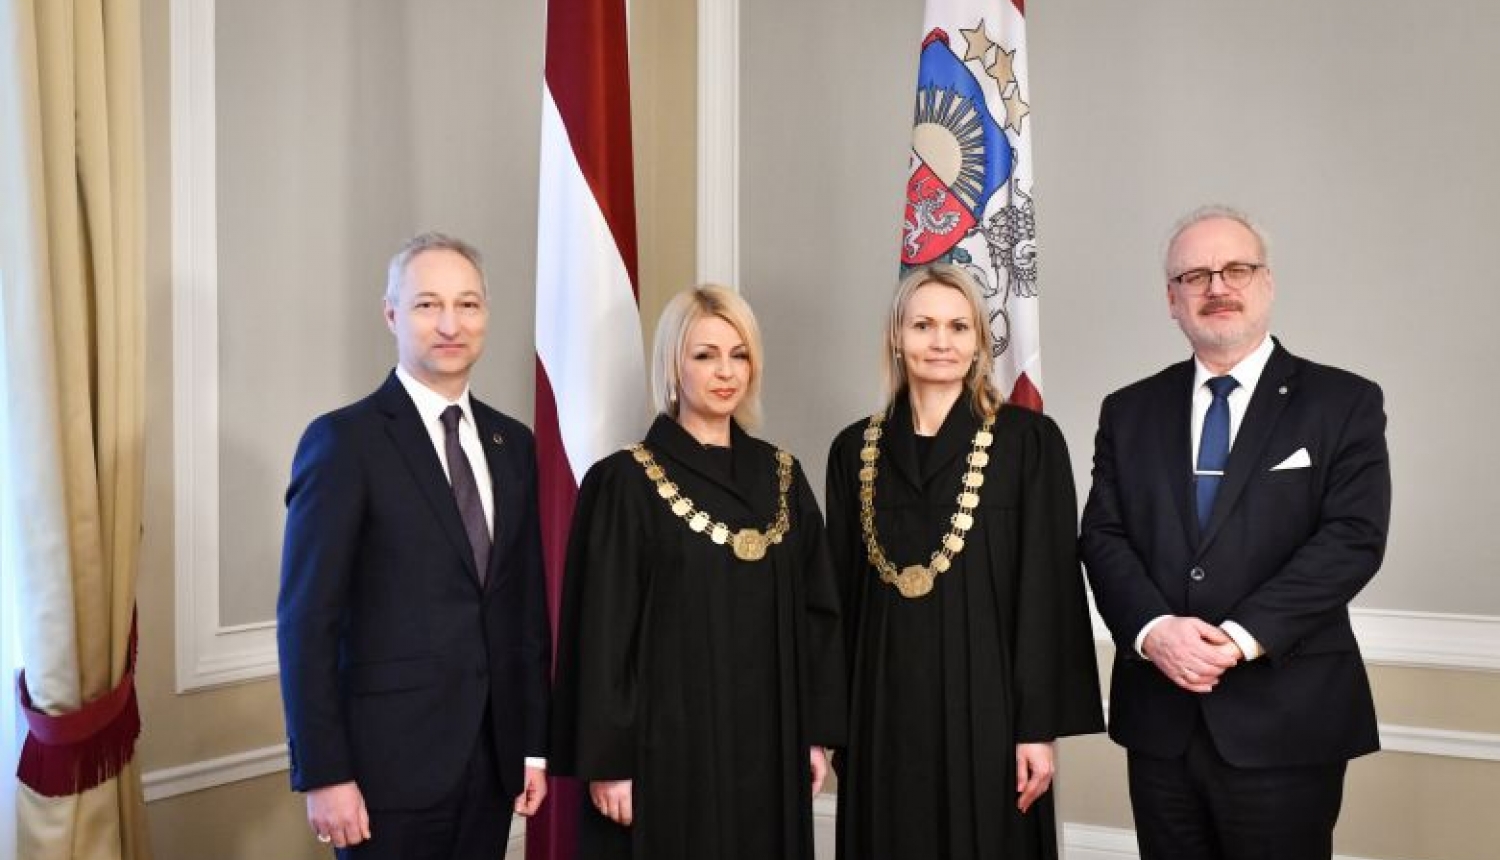 Valsts prezidentam Egilam Levitam tiesneša zvērestu dod tiesneses Kristiāna Grosfogele un Aija Briede